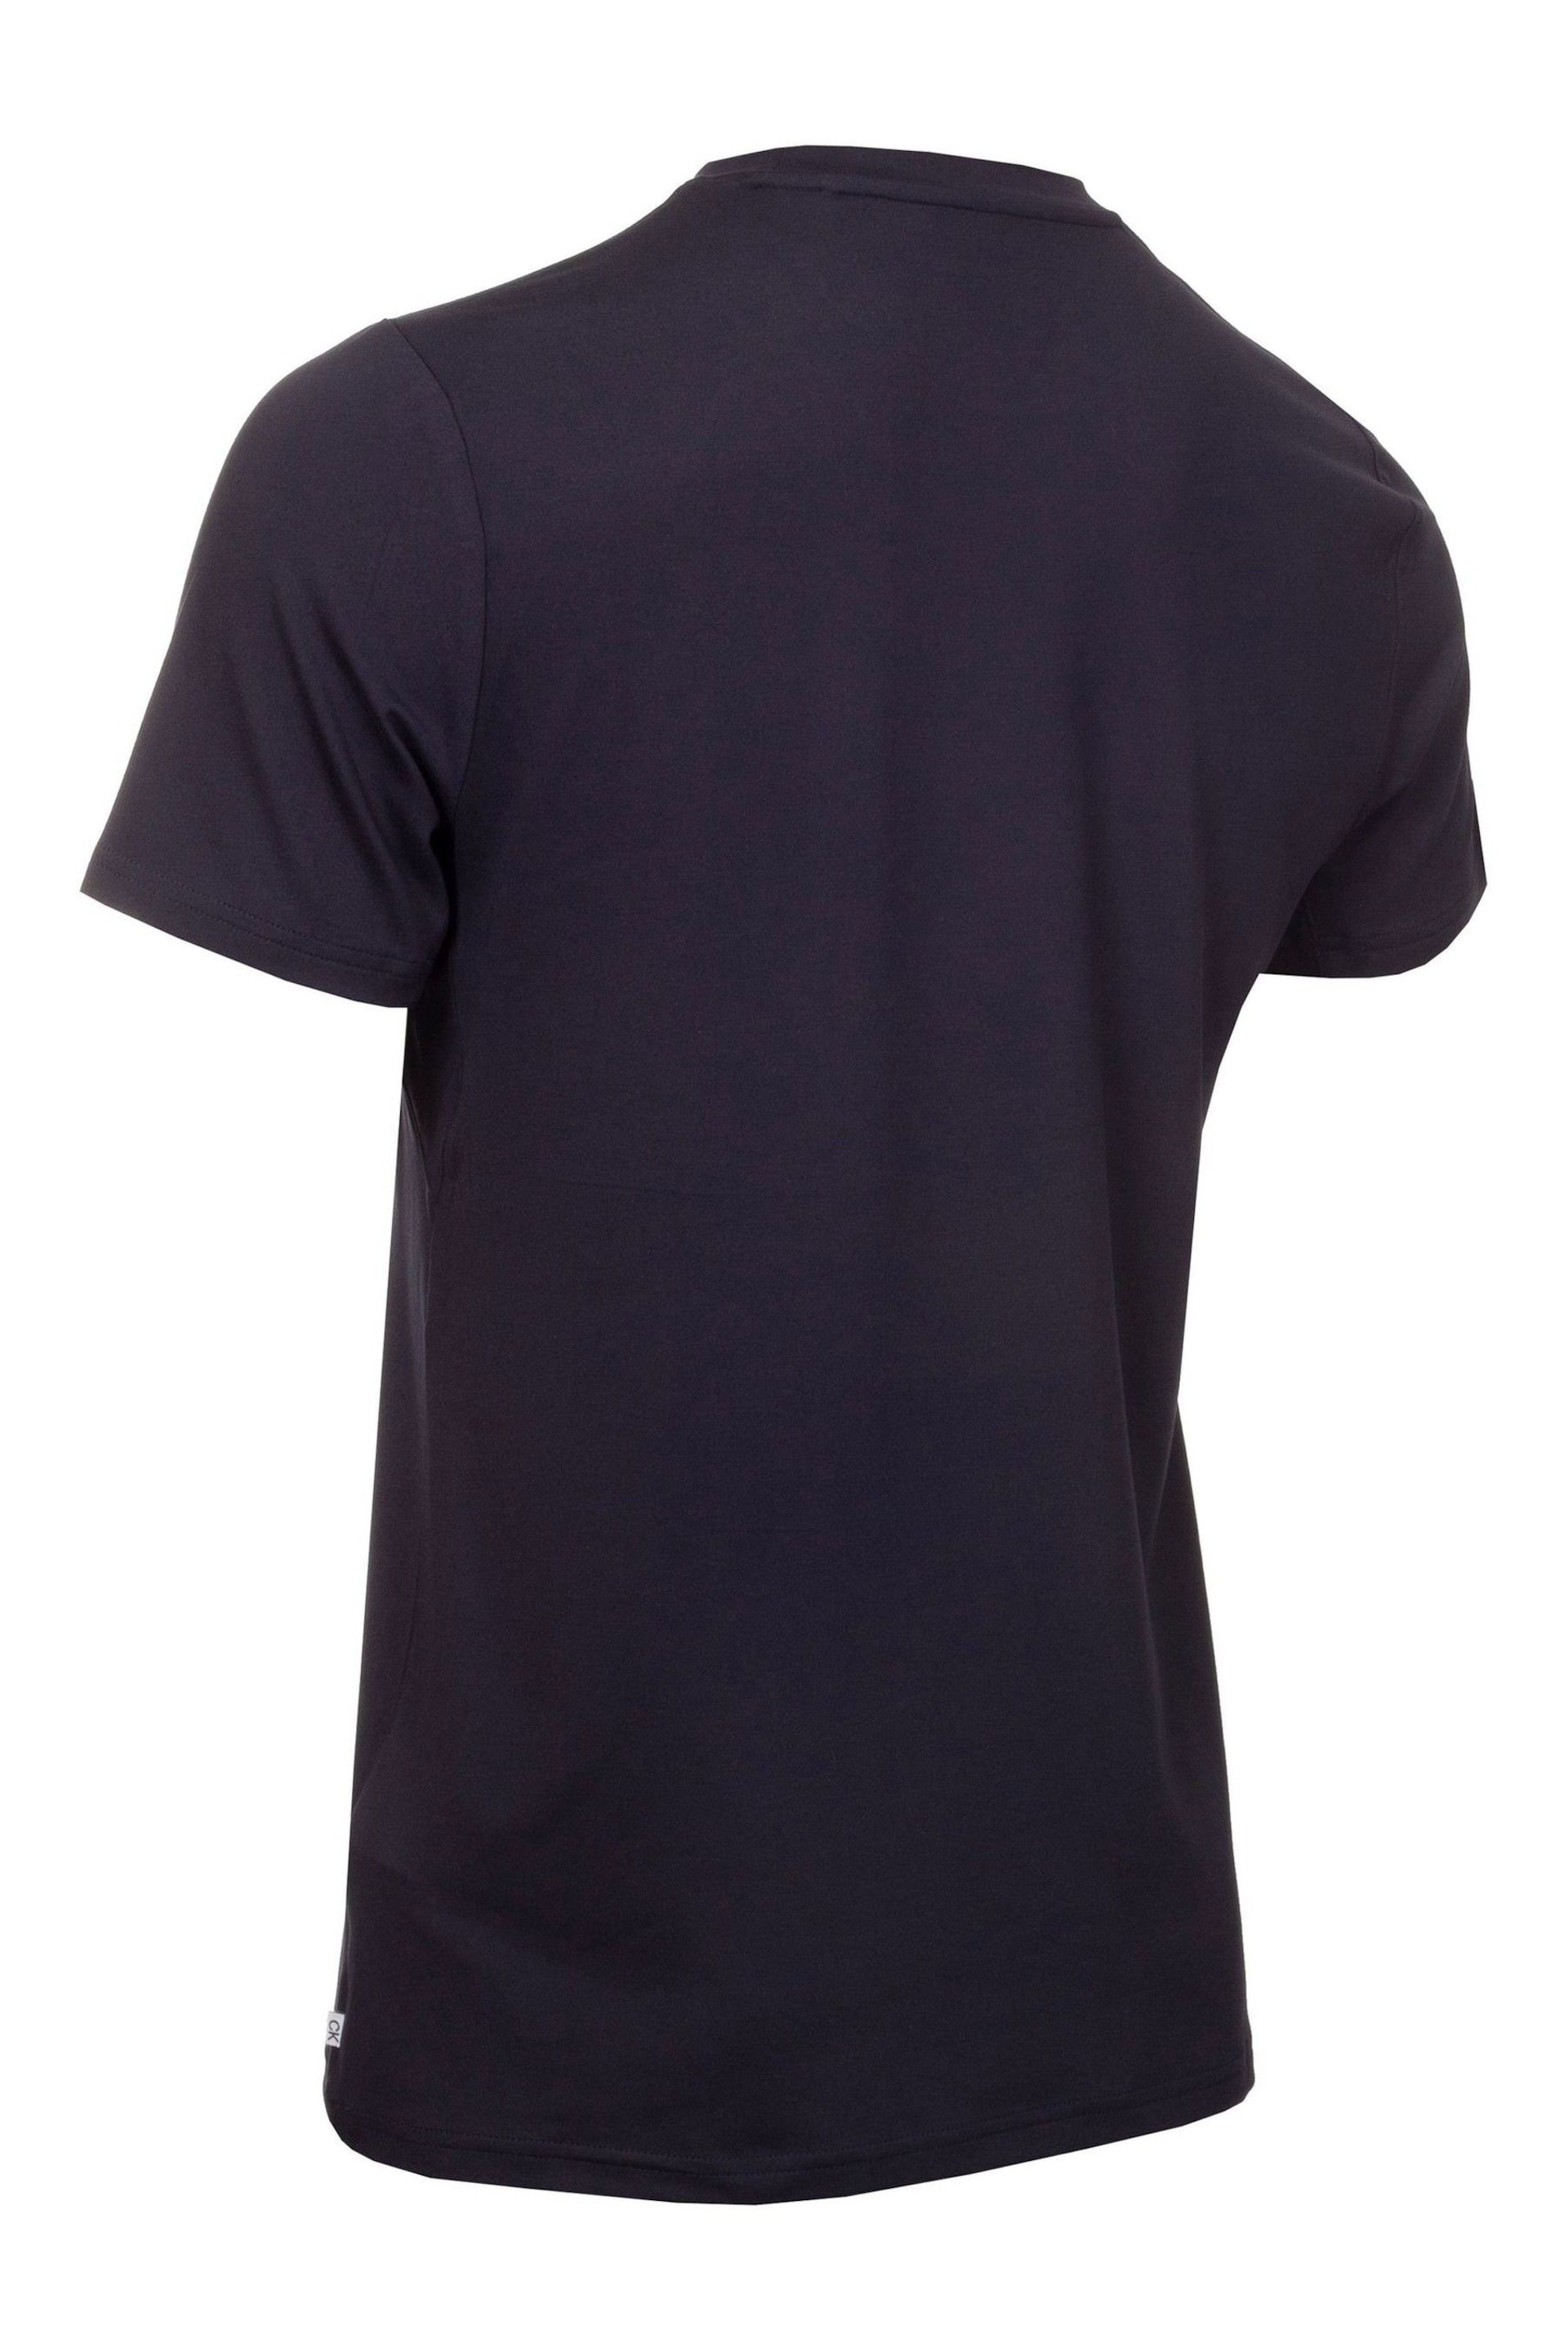 Calvin Klein Golf Tech T-Shirt 2 Pack - Image 6 of 8